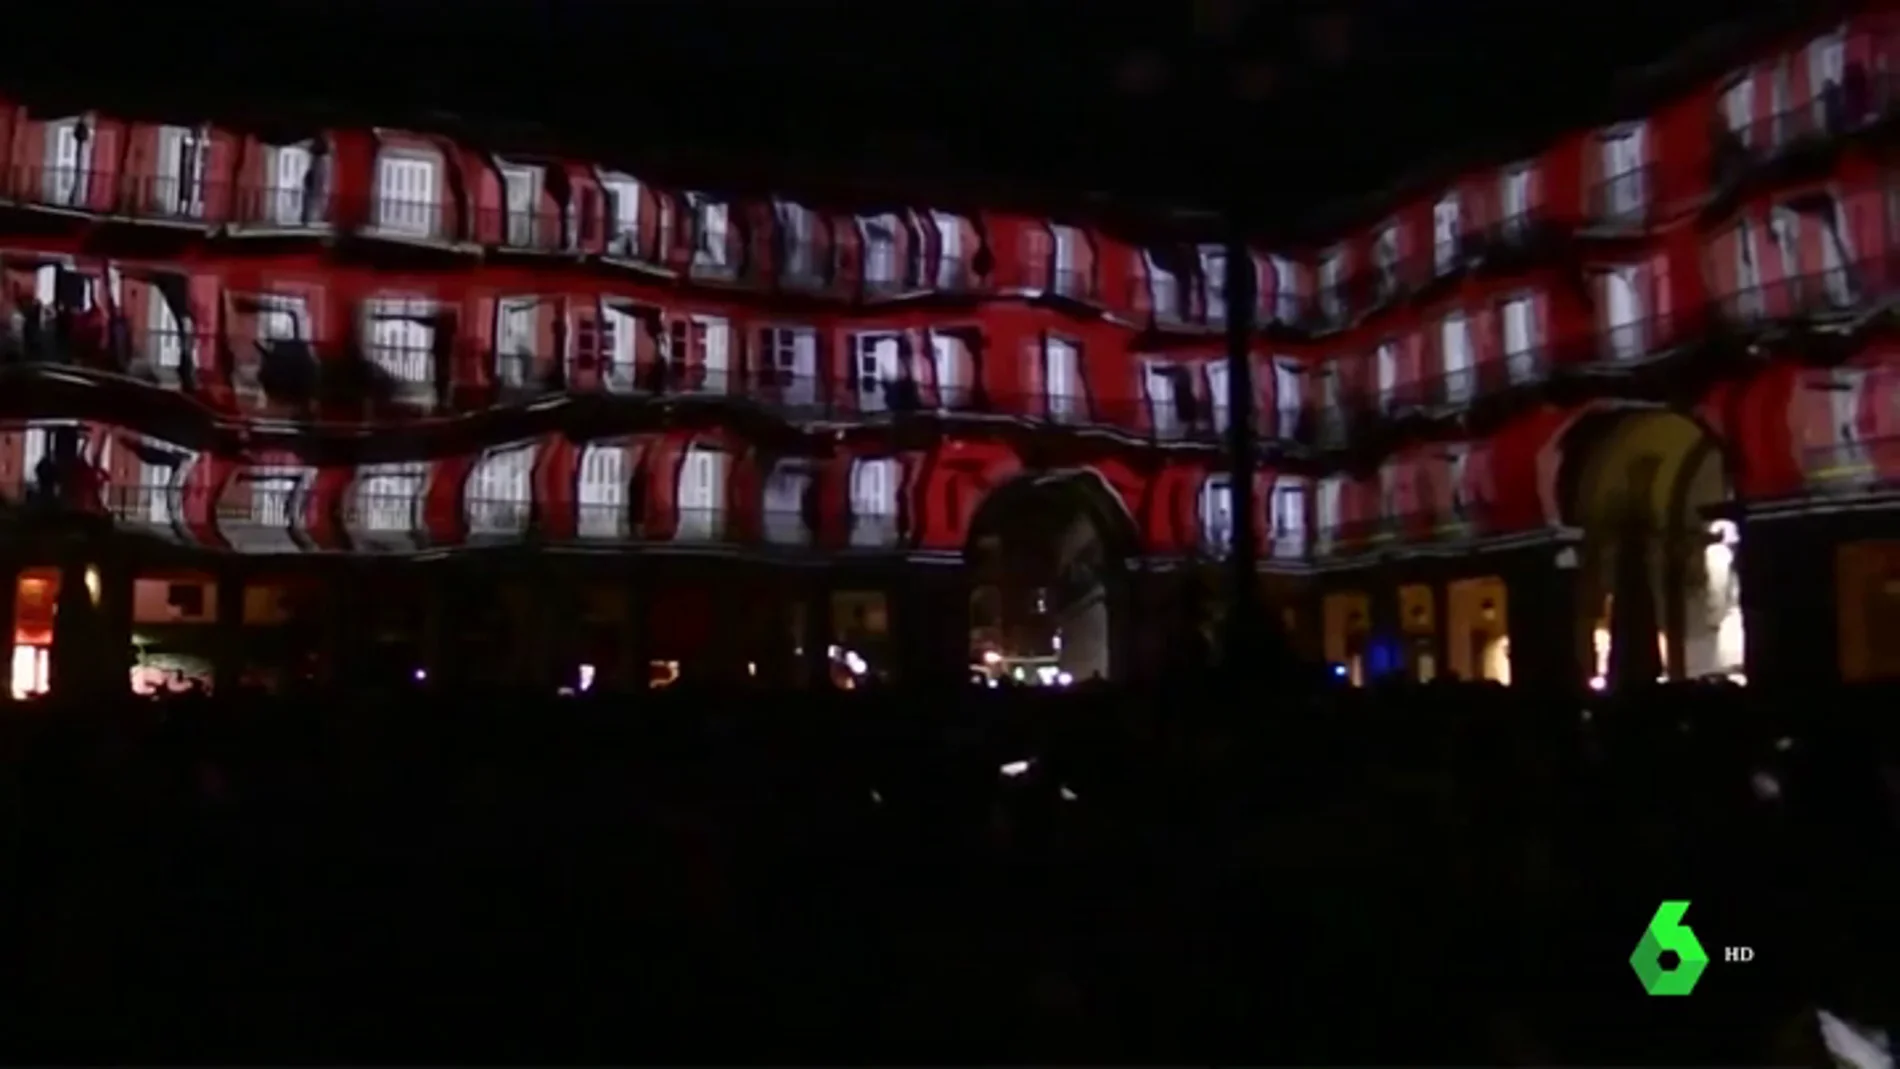 La Plaza Mayor de Madrid celebra sus 400 años con una espectacular proyección